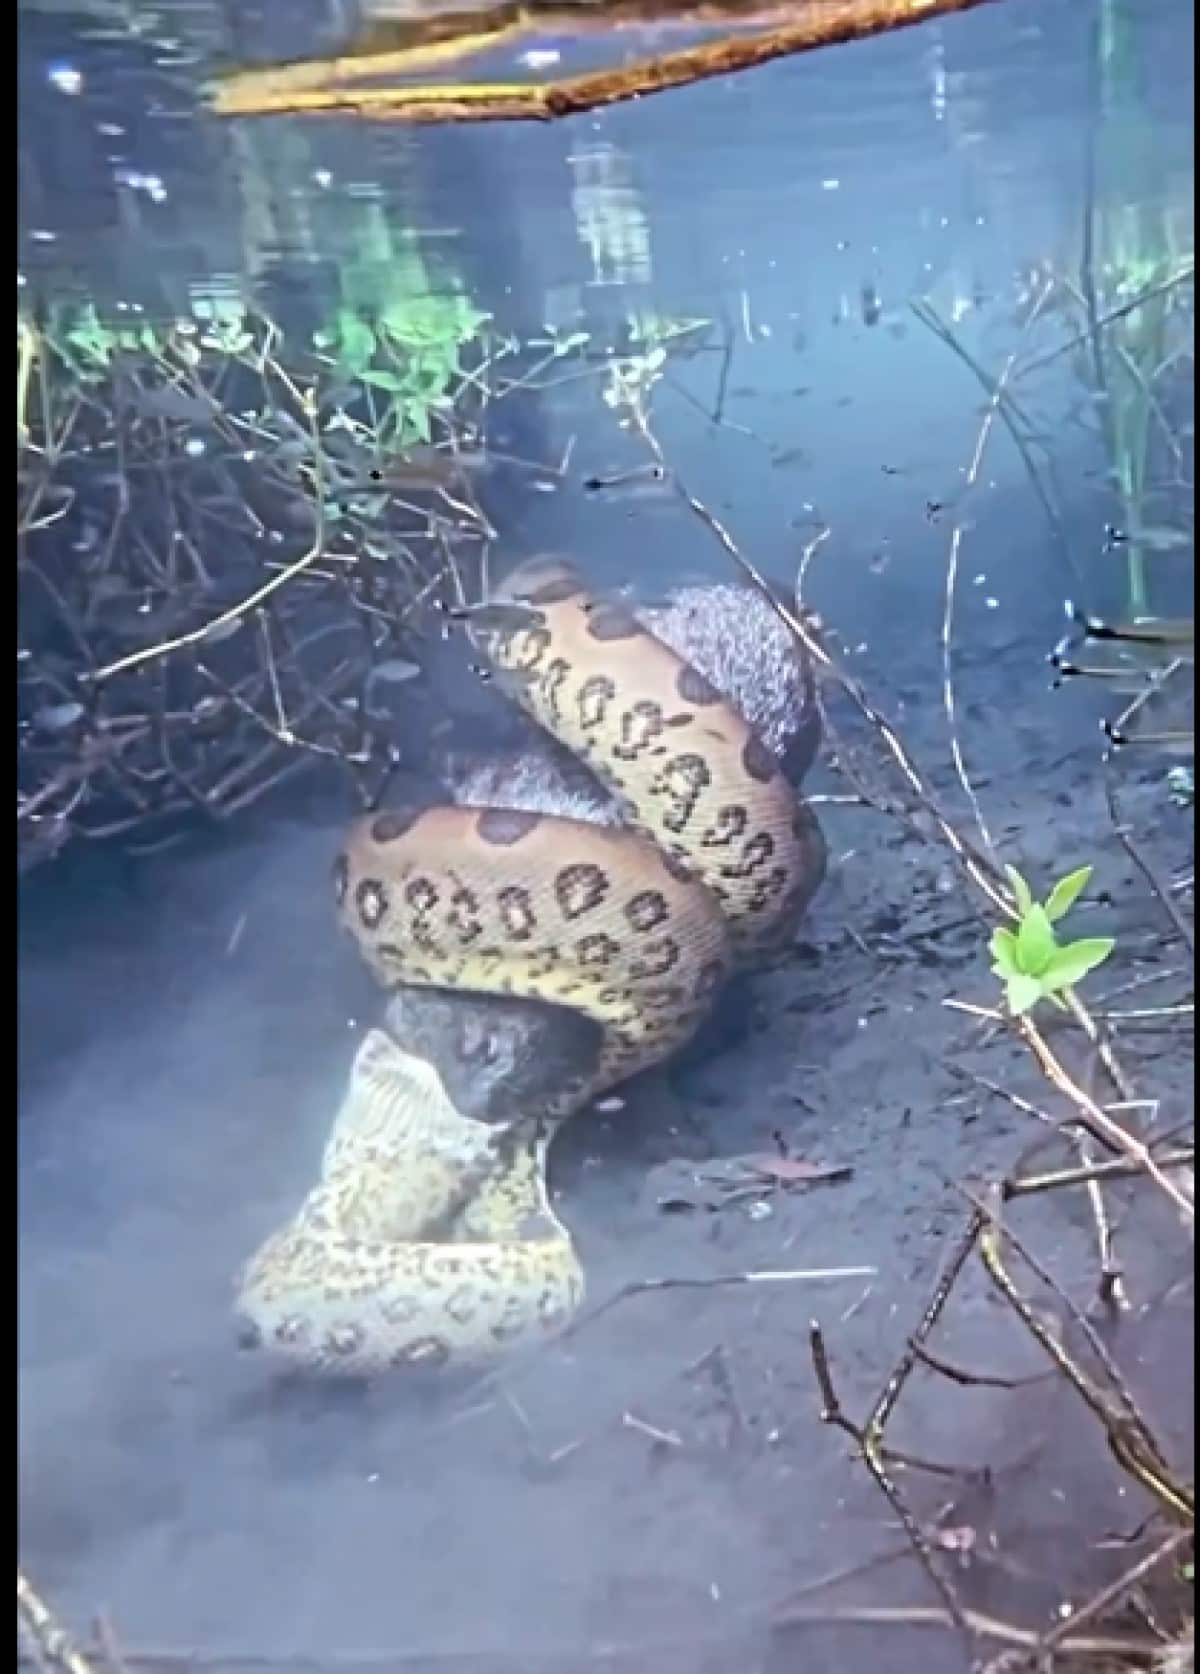 O guia acredita que a cobra sucuri que aparece no vídeo possa ter entre 4 a 5 metros.